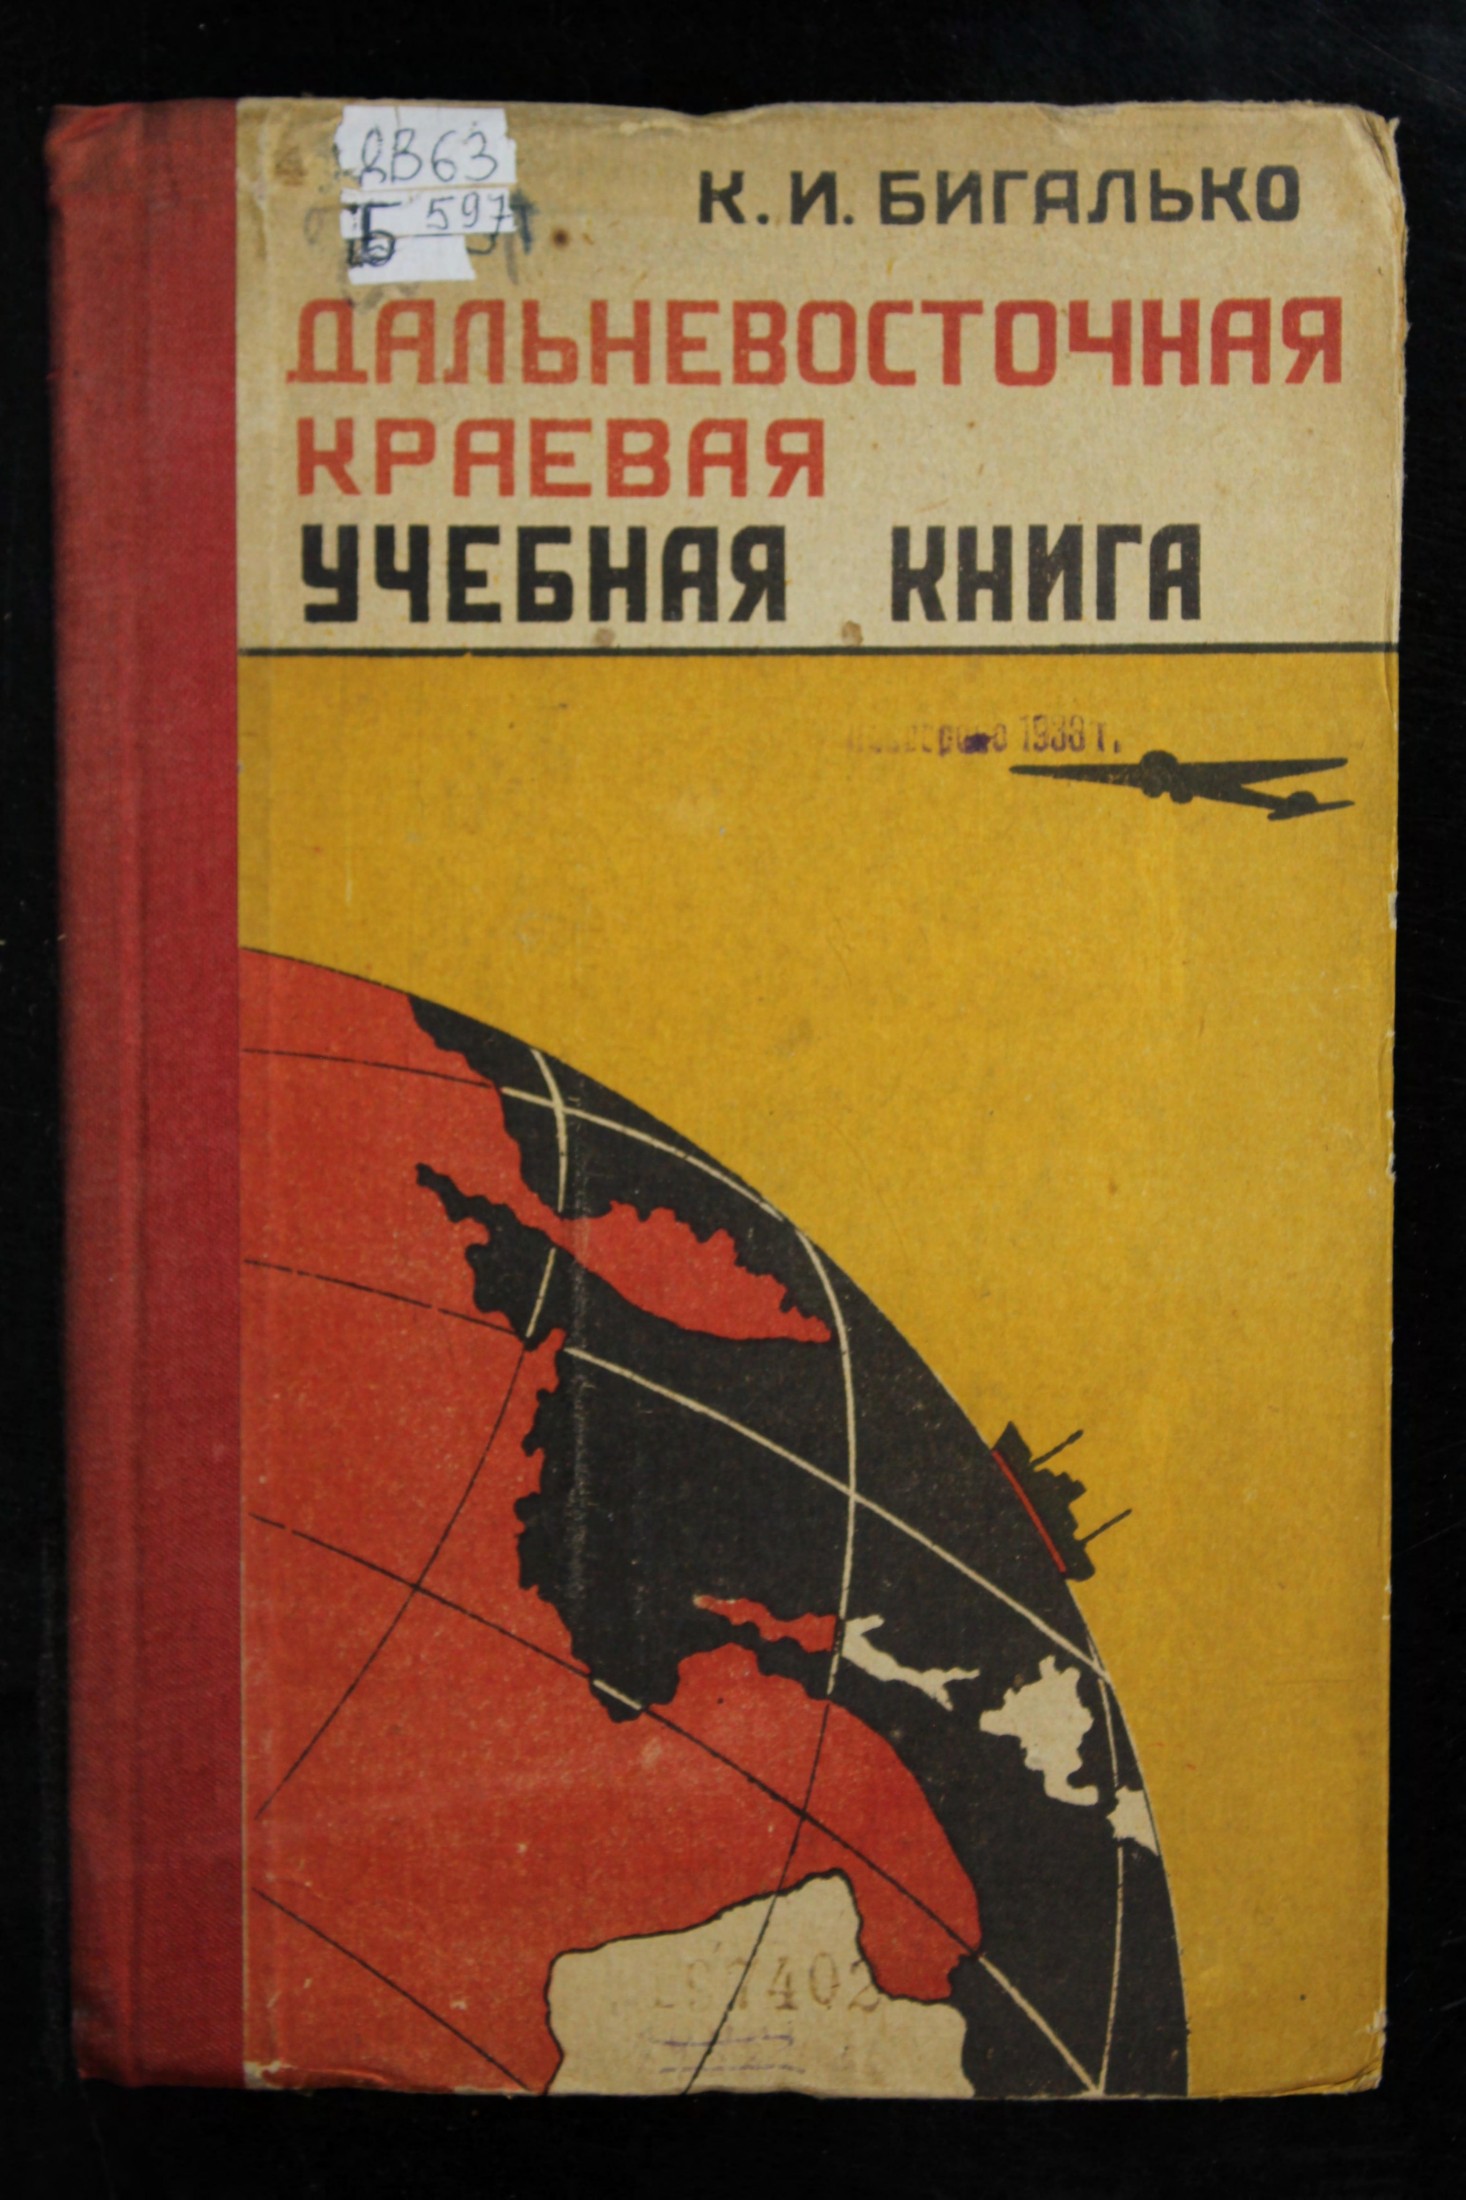 Бигалько, К. И. Дальневосточная краевая учебная книга 1-2 год обучения 1934